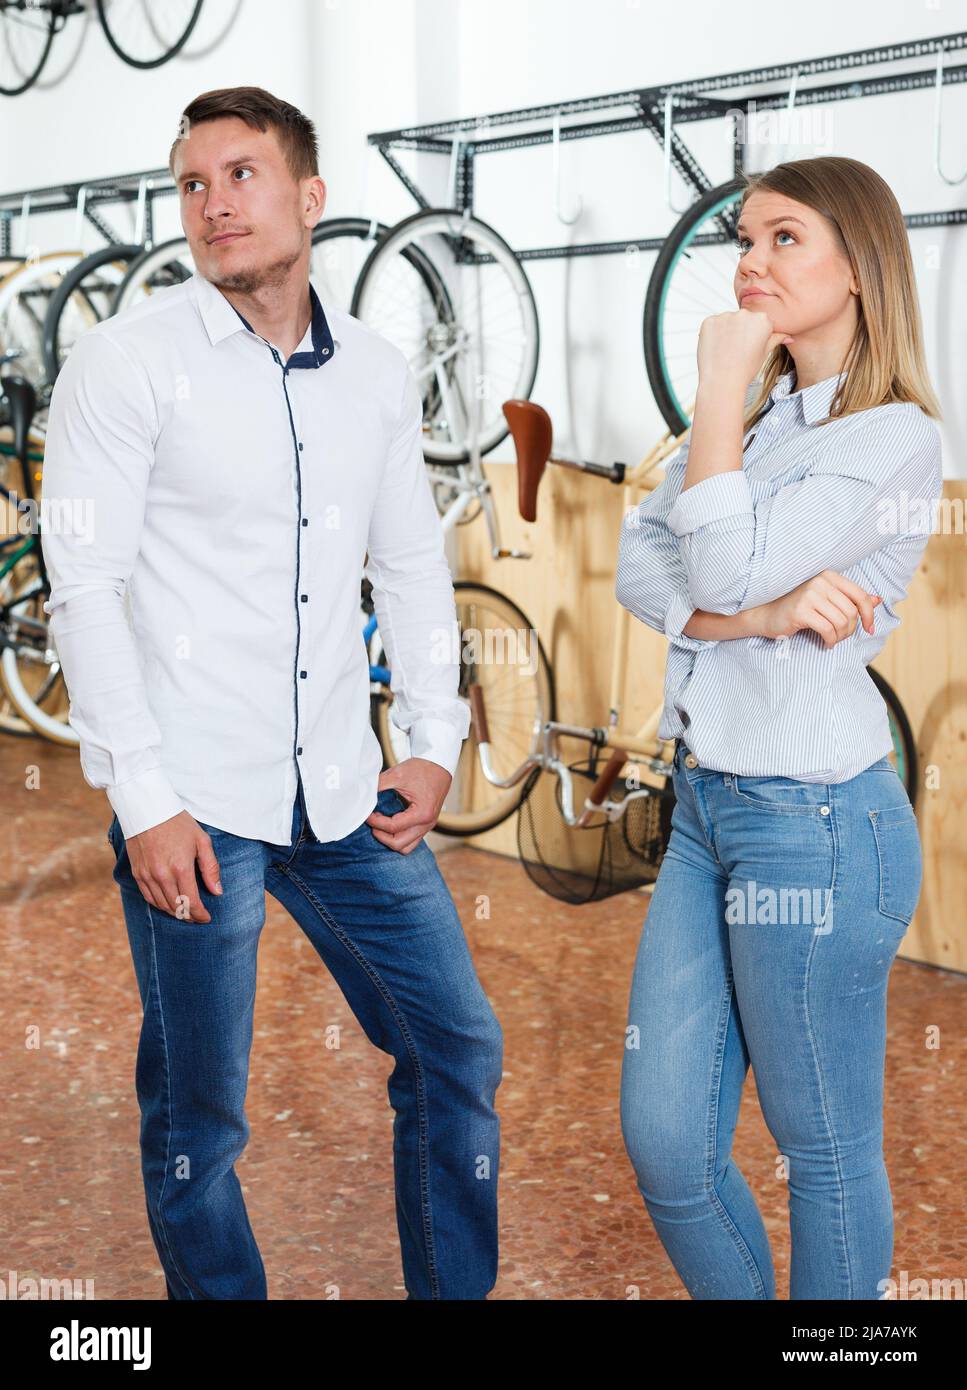 La coppia sta facendo shopping e scegliendo la nuova bicicletta ed avendo disaccordi Foto Stock